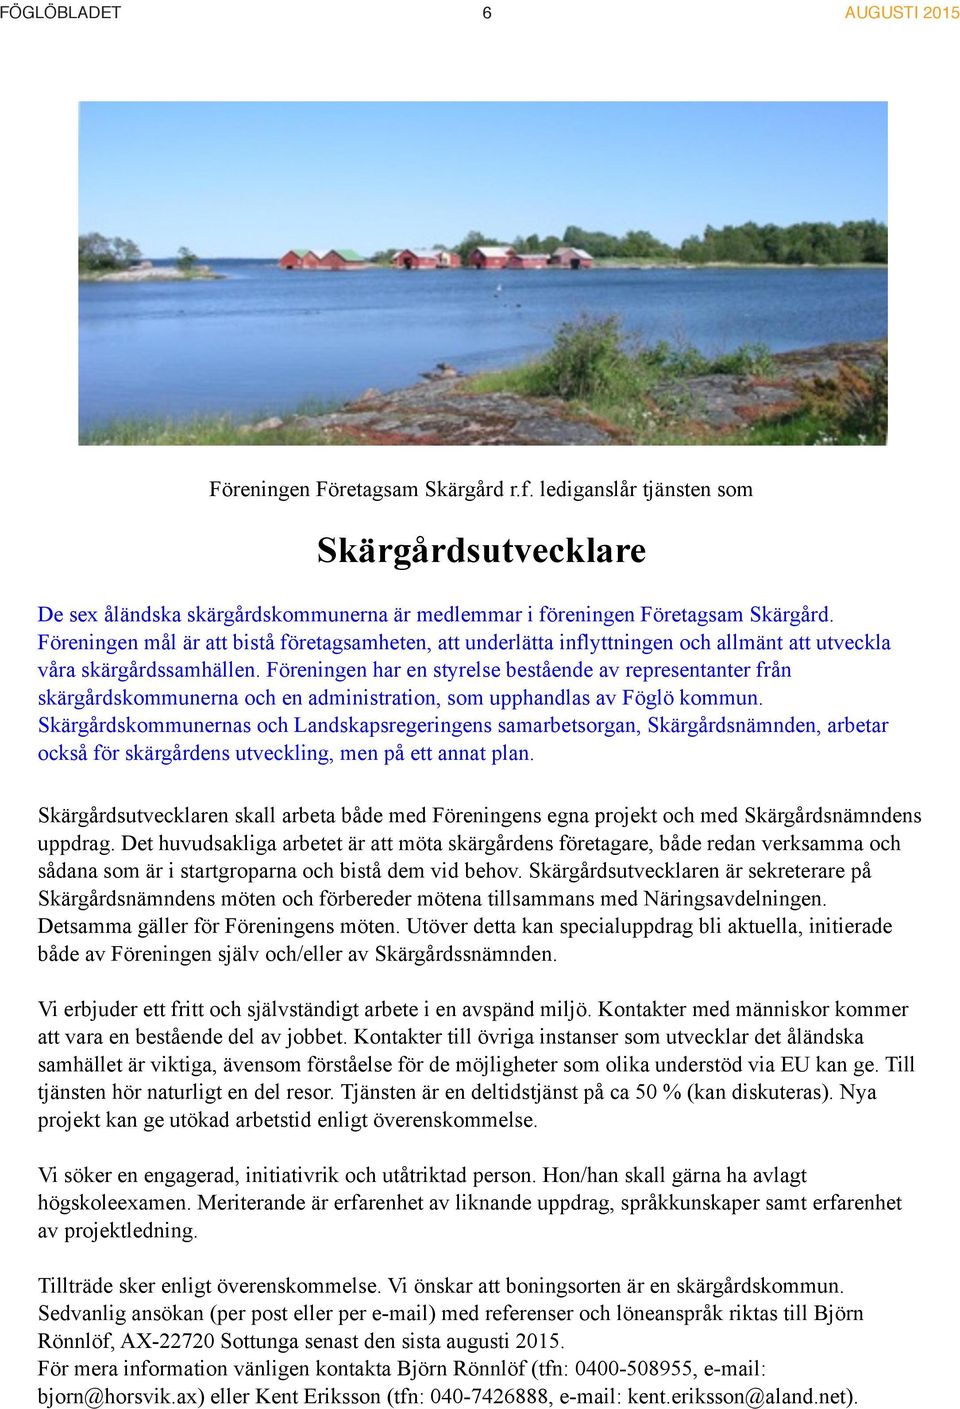 Föreningen har en styrelse bestående av representanter från skärgårdskommunerna och en administration, som upphandlas av Föglö kommun.